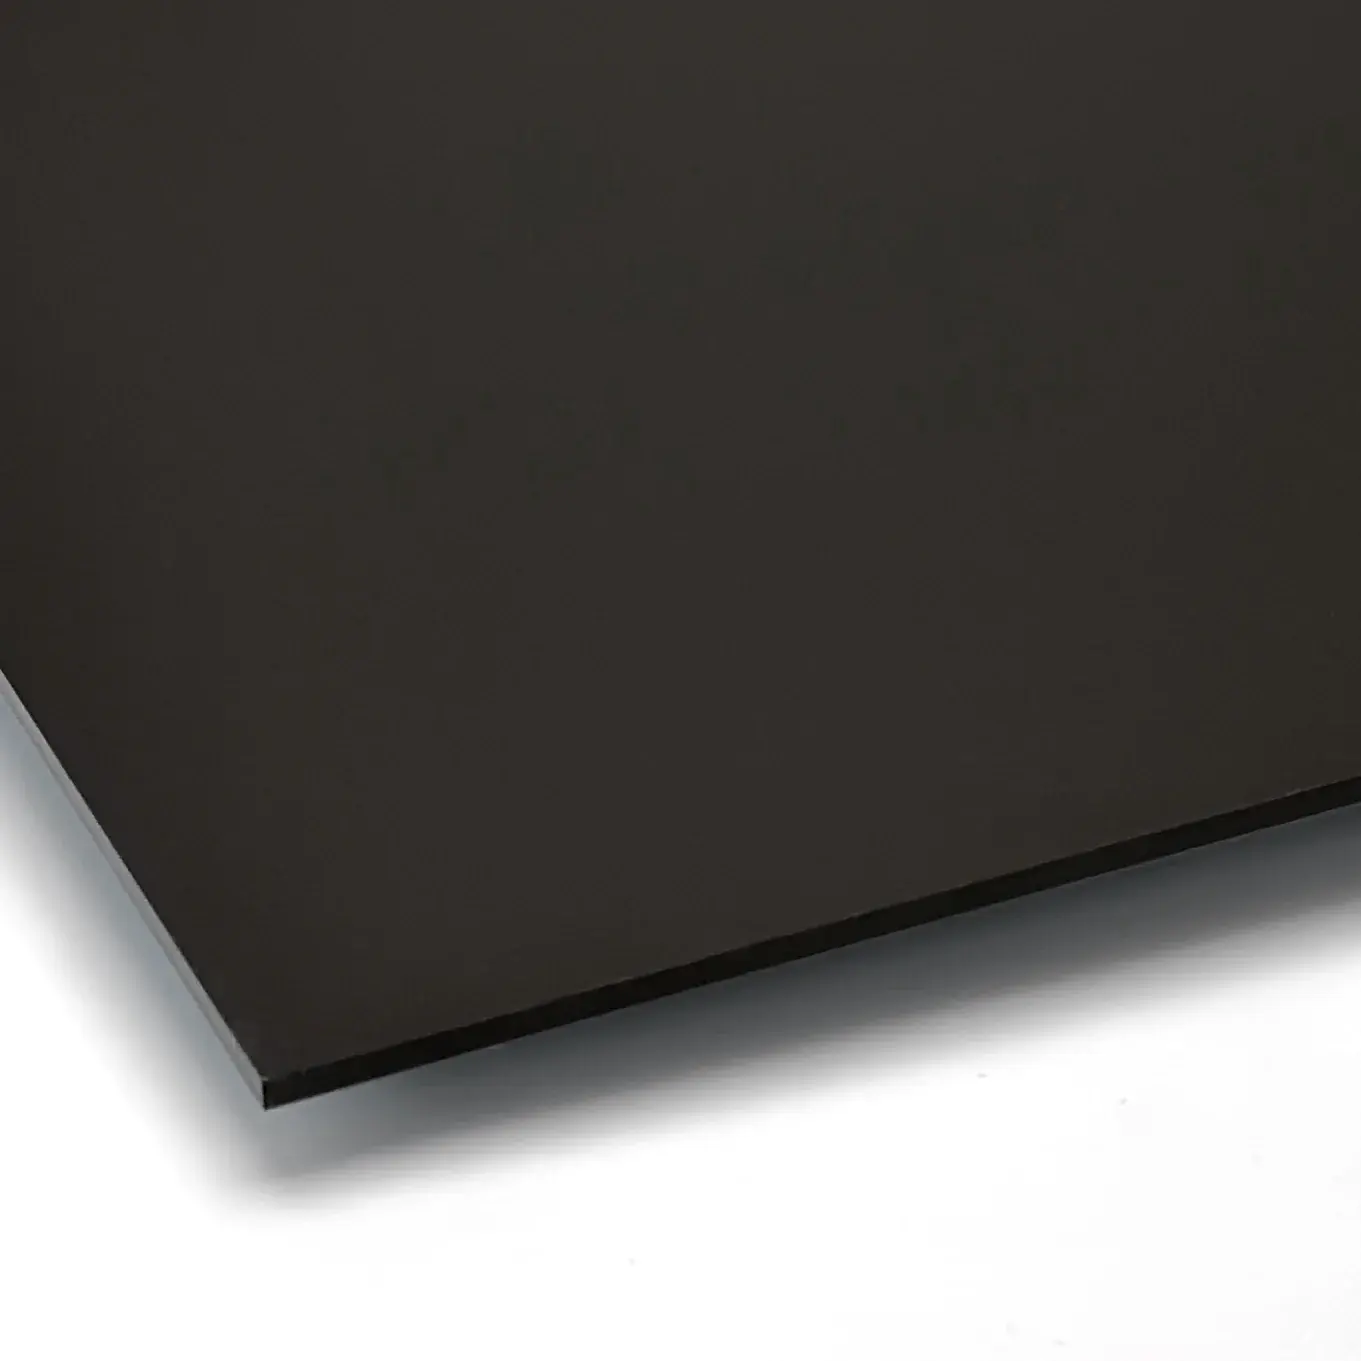 Лучший матовый черный акриловый лист 3 мм черный пластиковый лист 3 мм толстый черный акриловый лист 3 мм 12x15 для рекламы